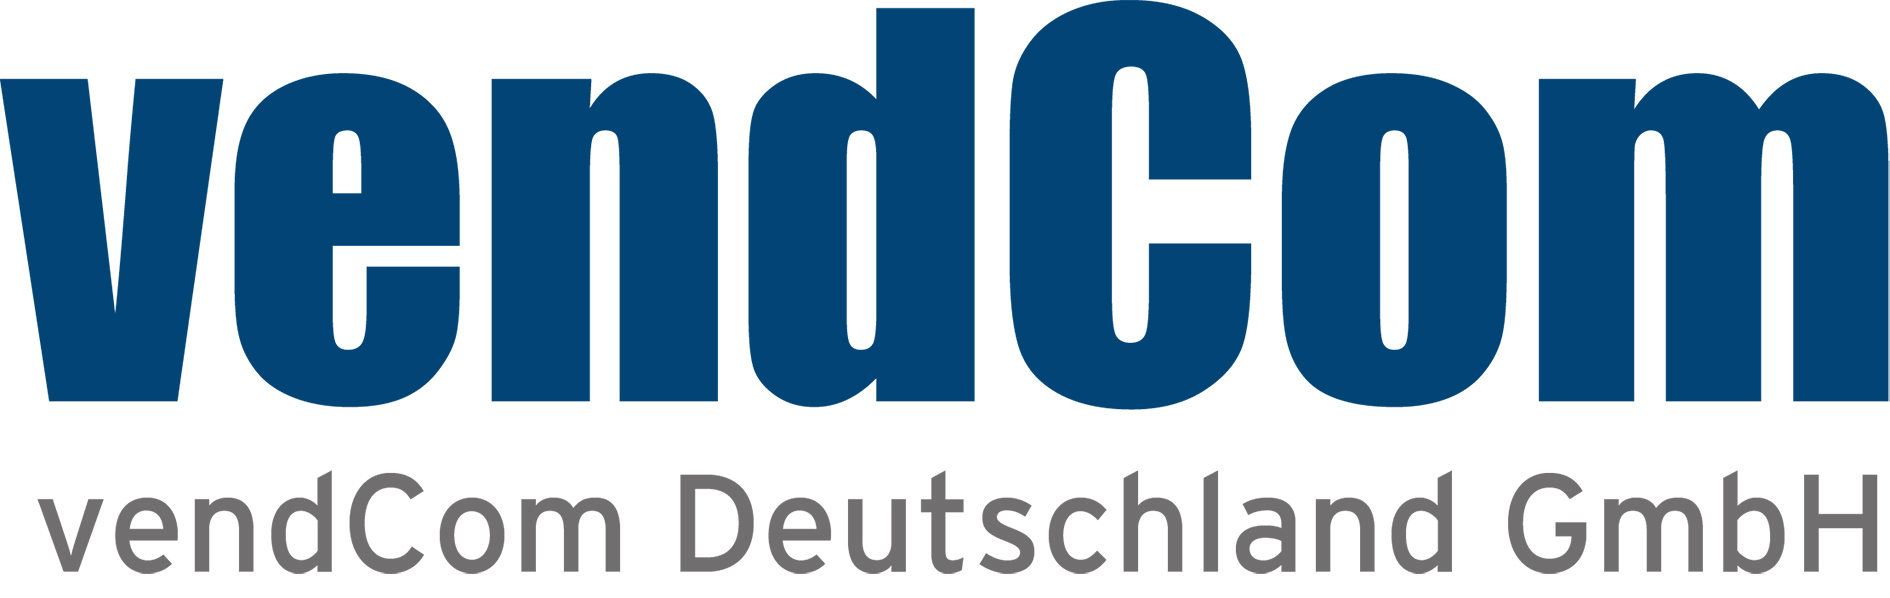 Vendcom Deutschland GmbH